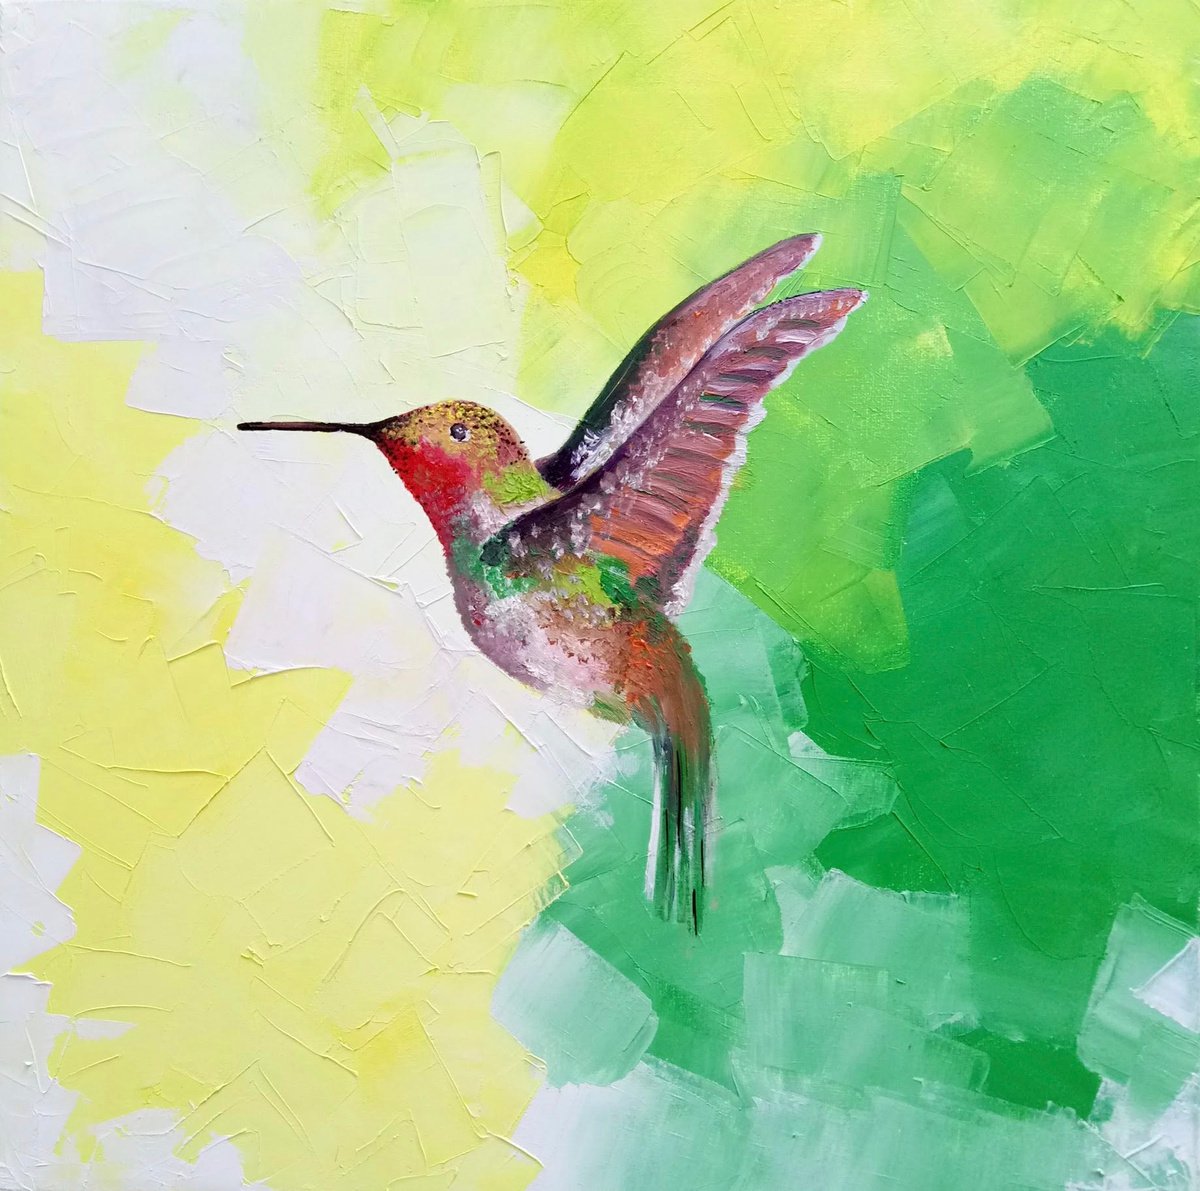 Green mood / Flying hummingbird by Olha Gitman